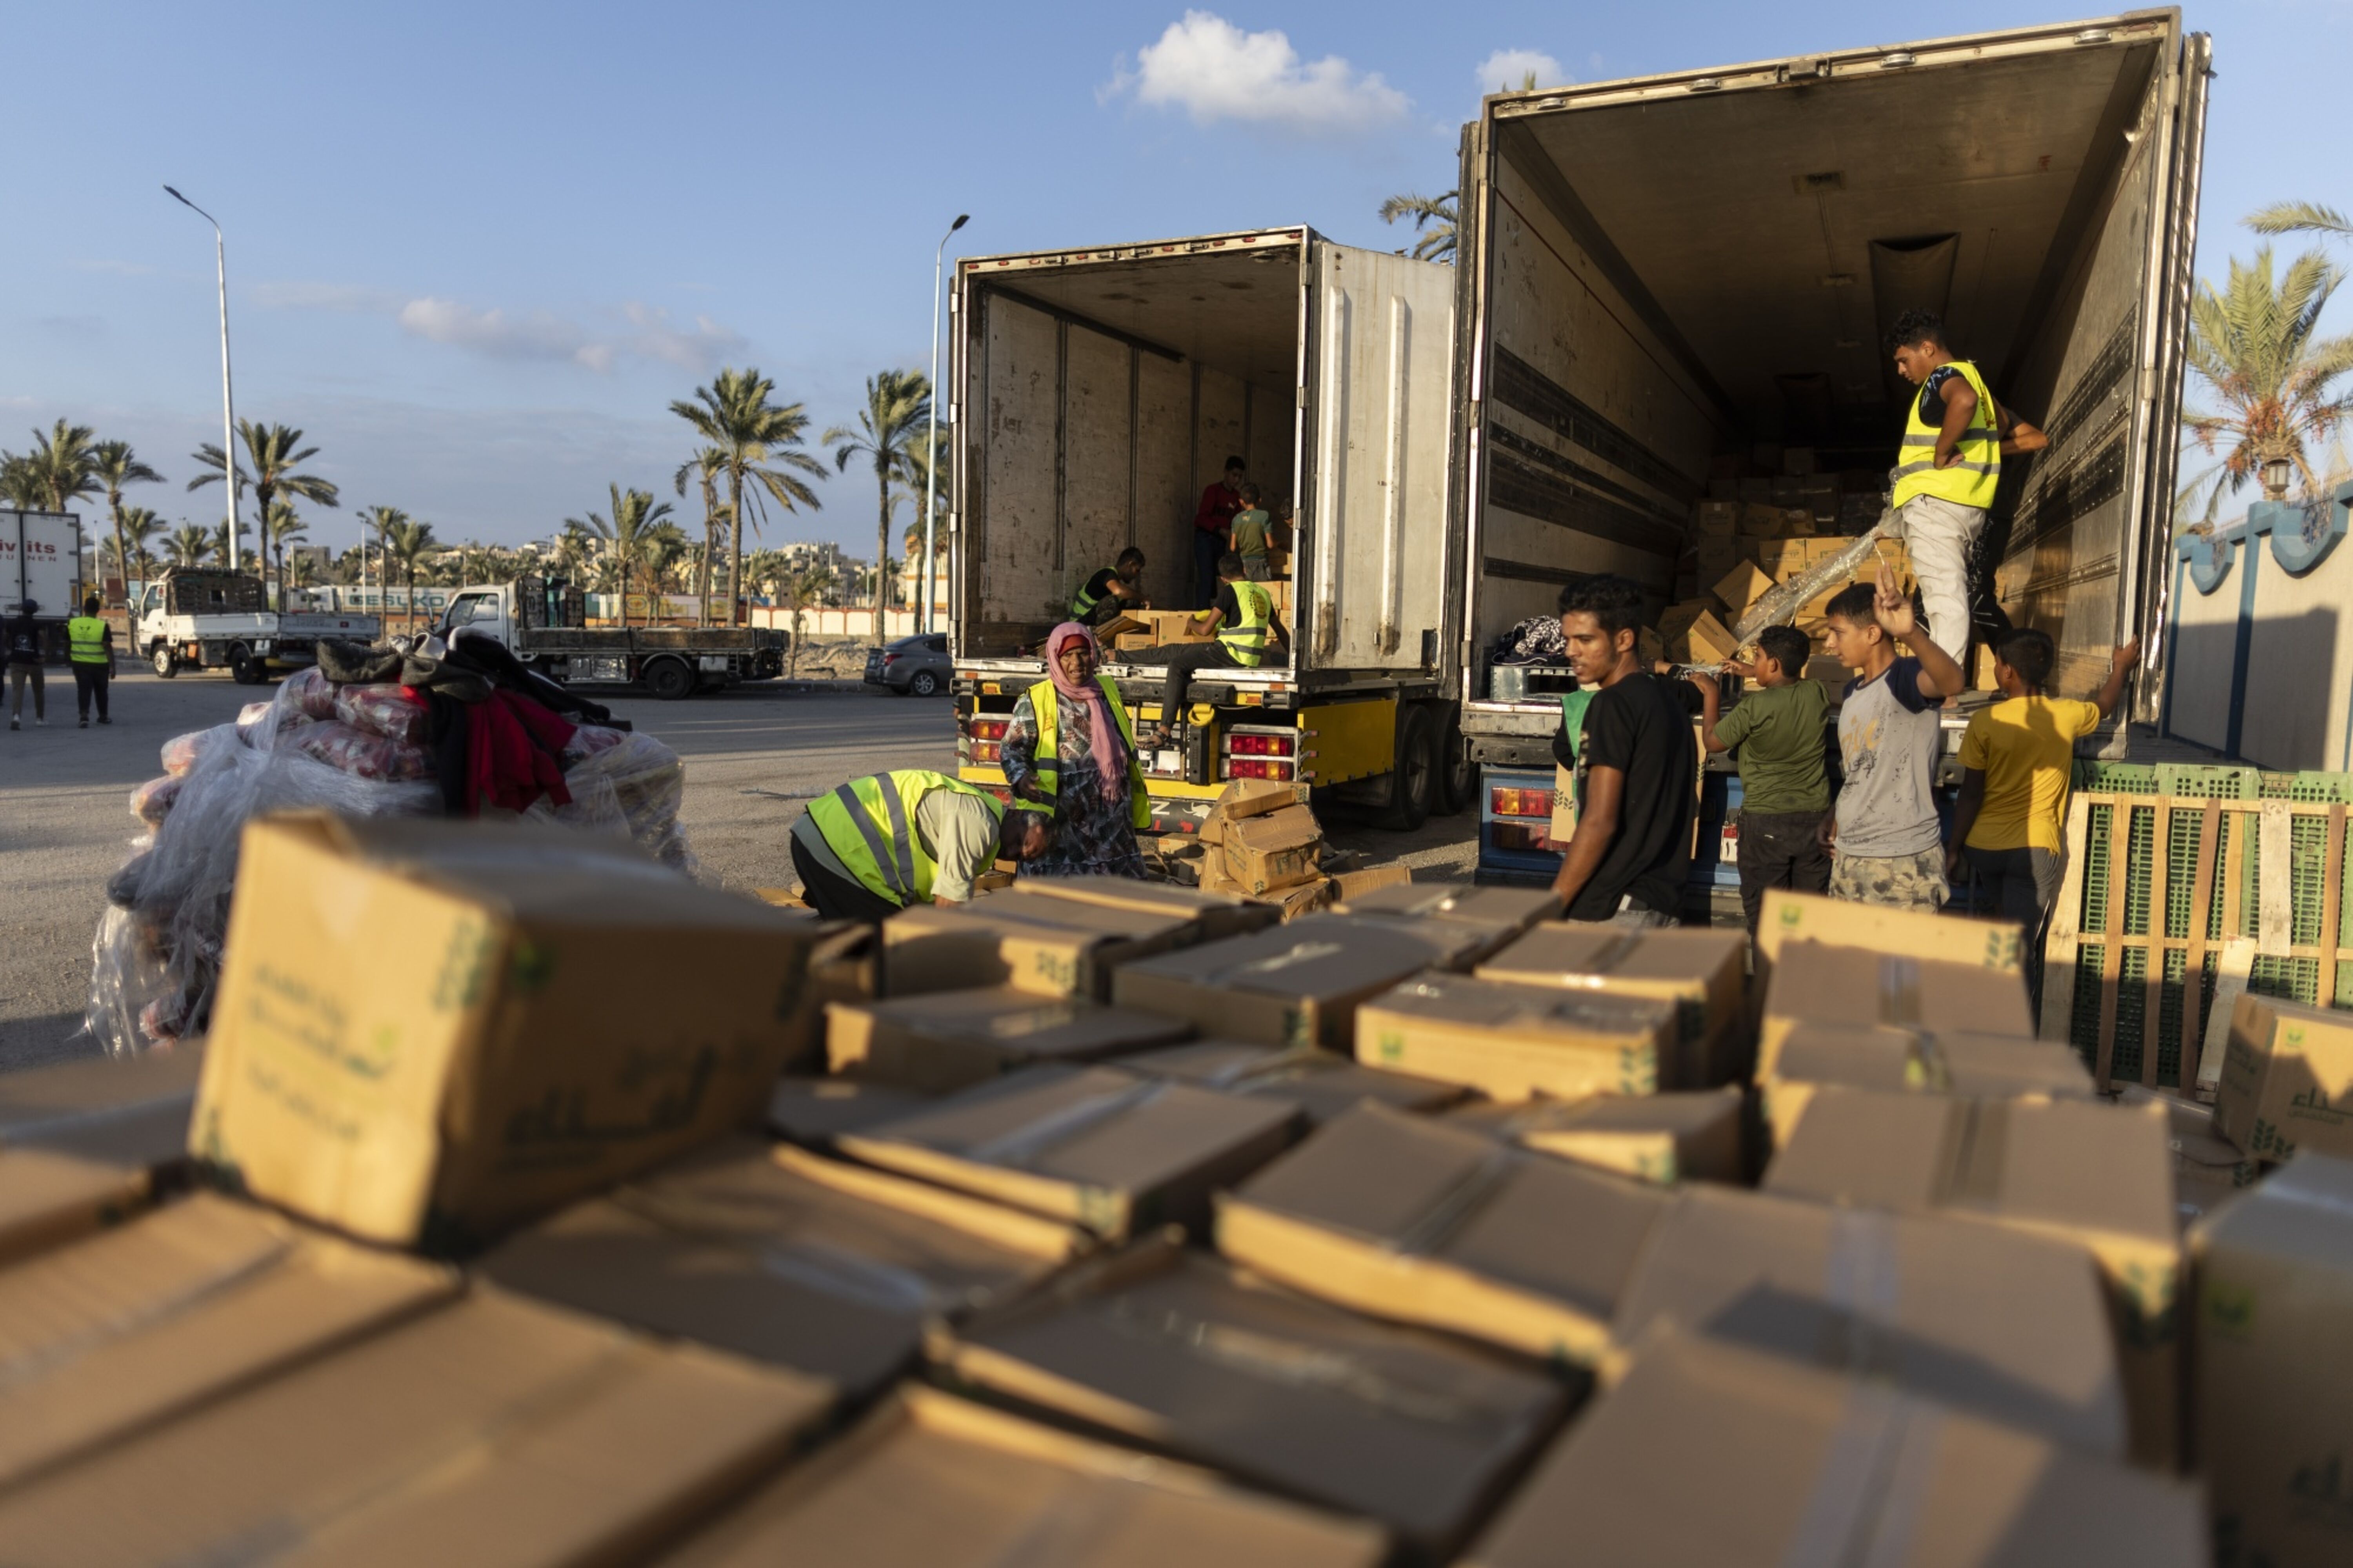 Voluntários carregam alimentos e suprimentos em caminhões em um comboio de ajuda humanitária em 16 de outubro no Sinai do Norte, Egito (Bloomberg)